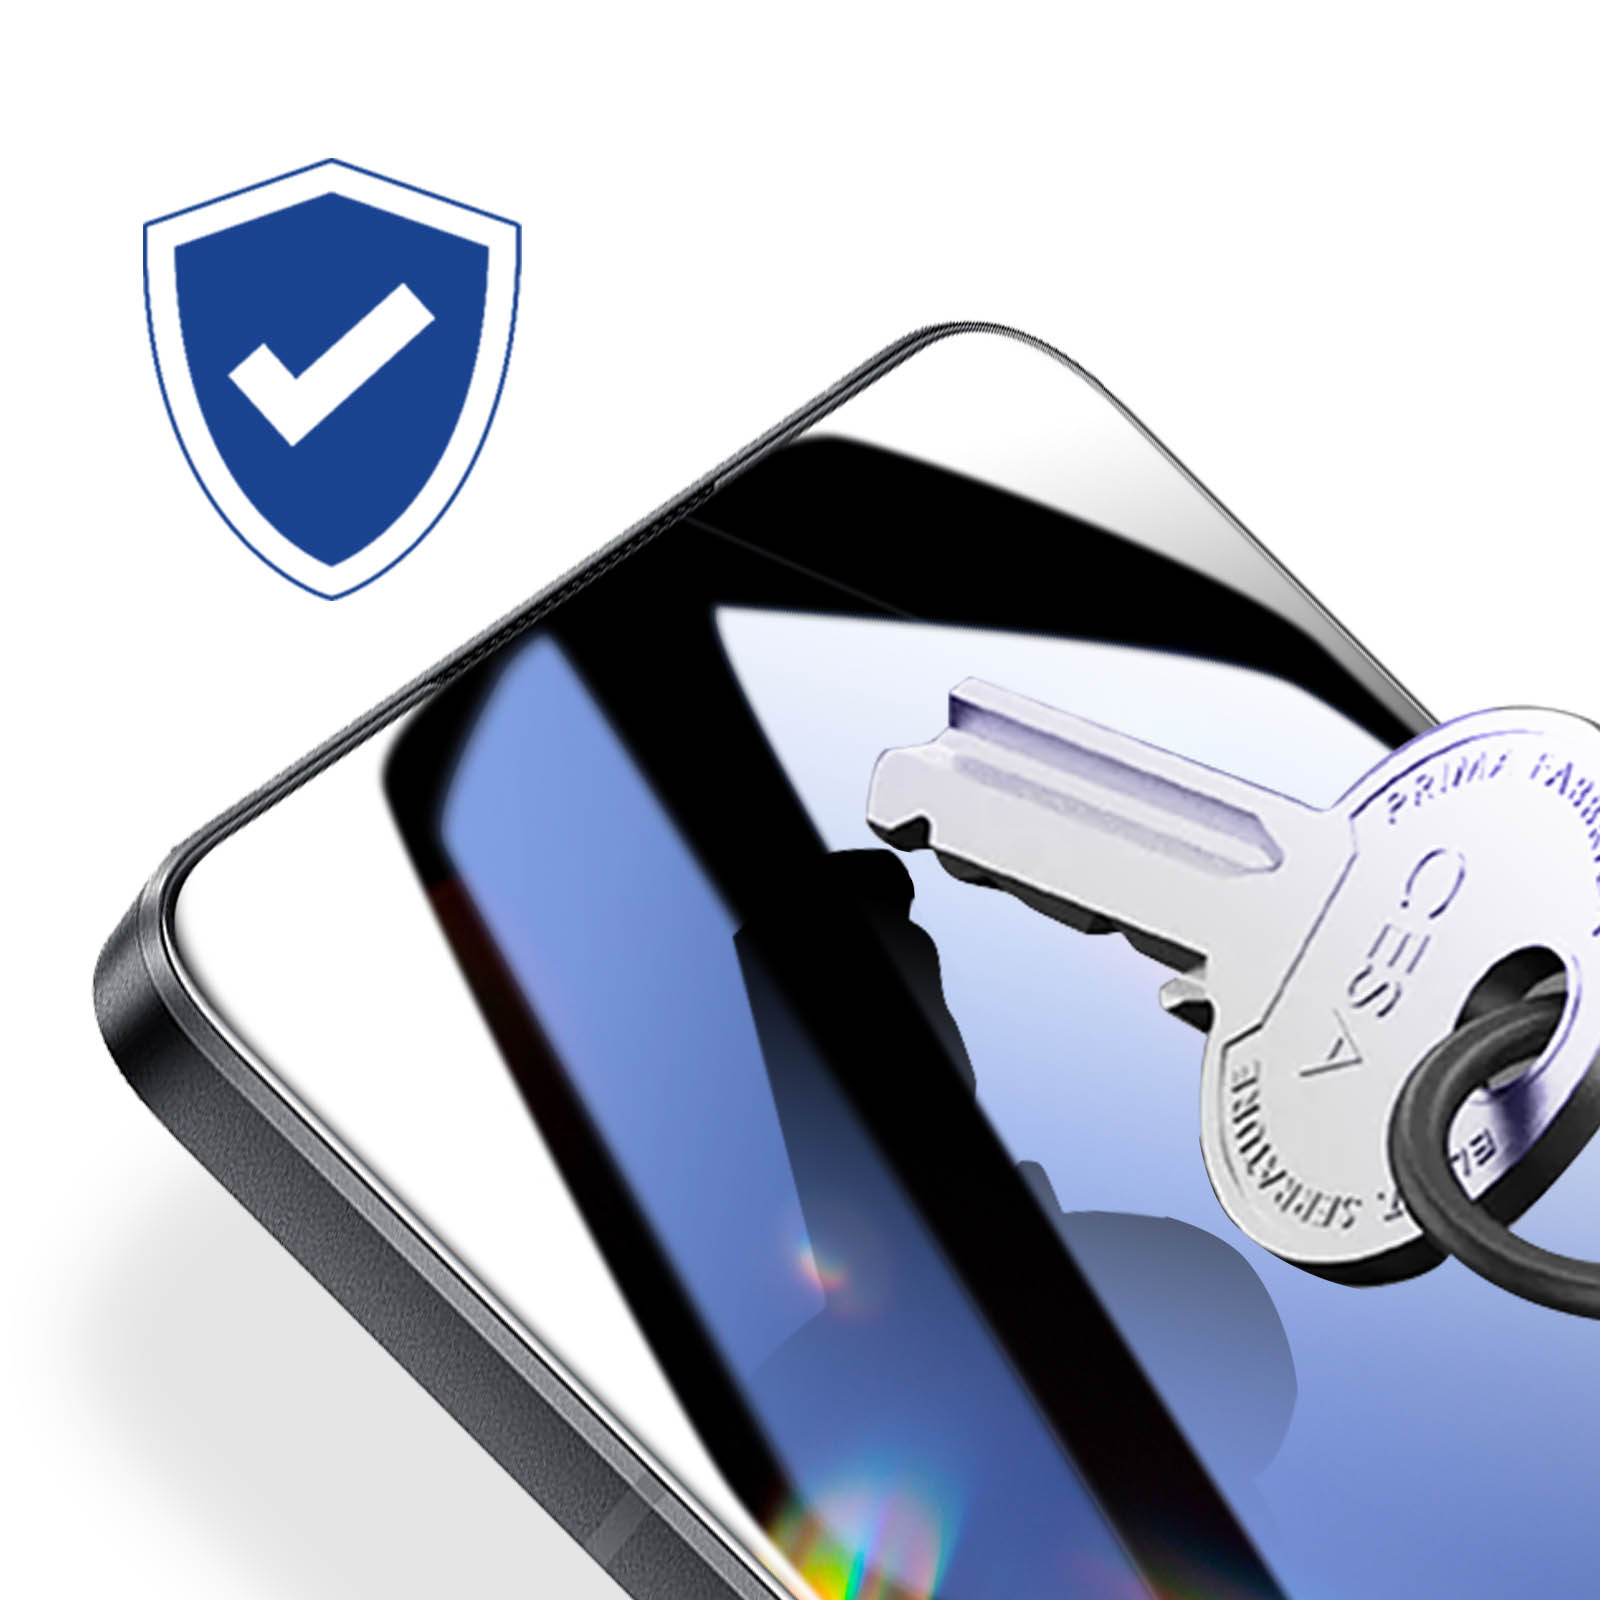 Protégez votre confidentialité avec le Film Protection Hydrogel Anti Espion  - 20 pcs